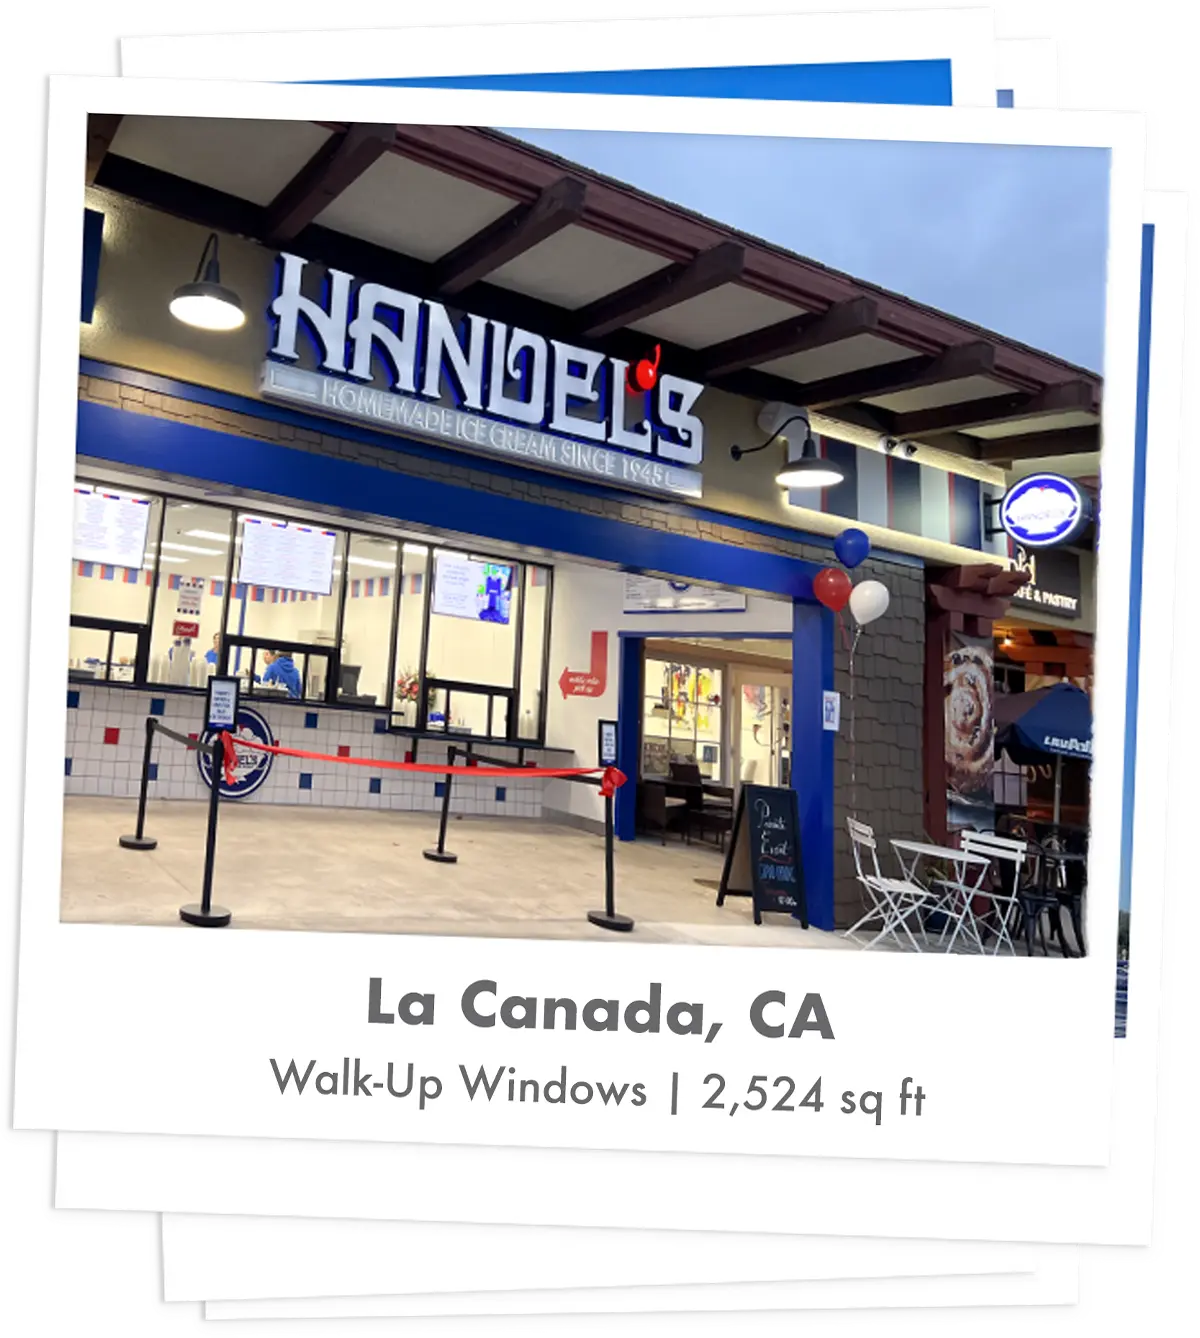 Handel's Ice Cream store in La Canada, California